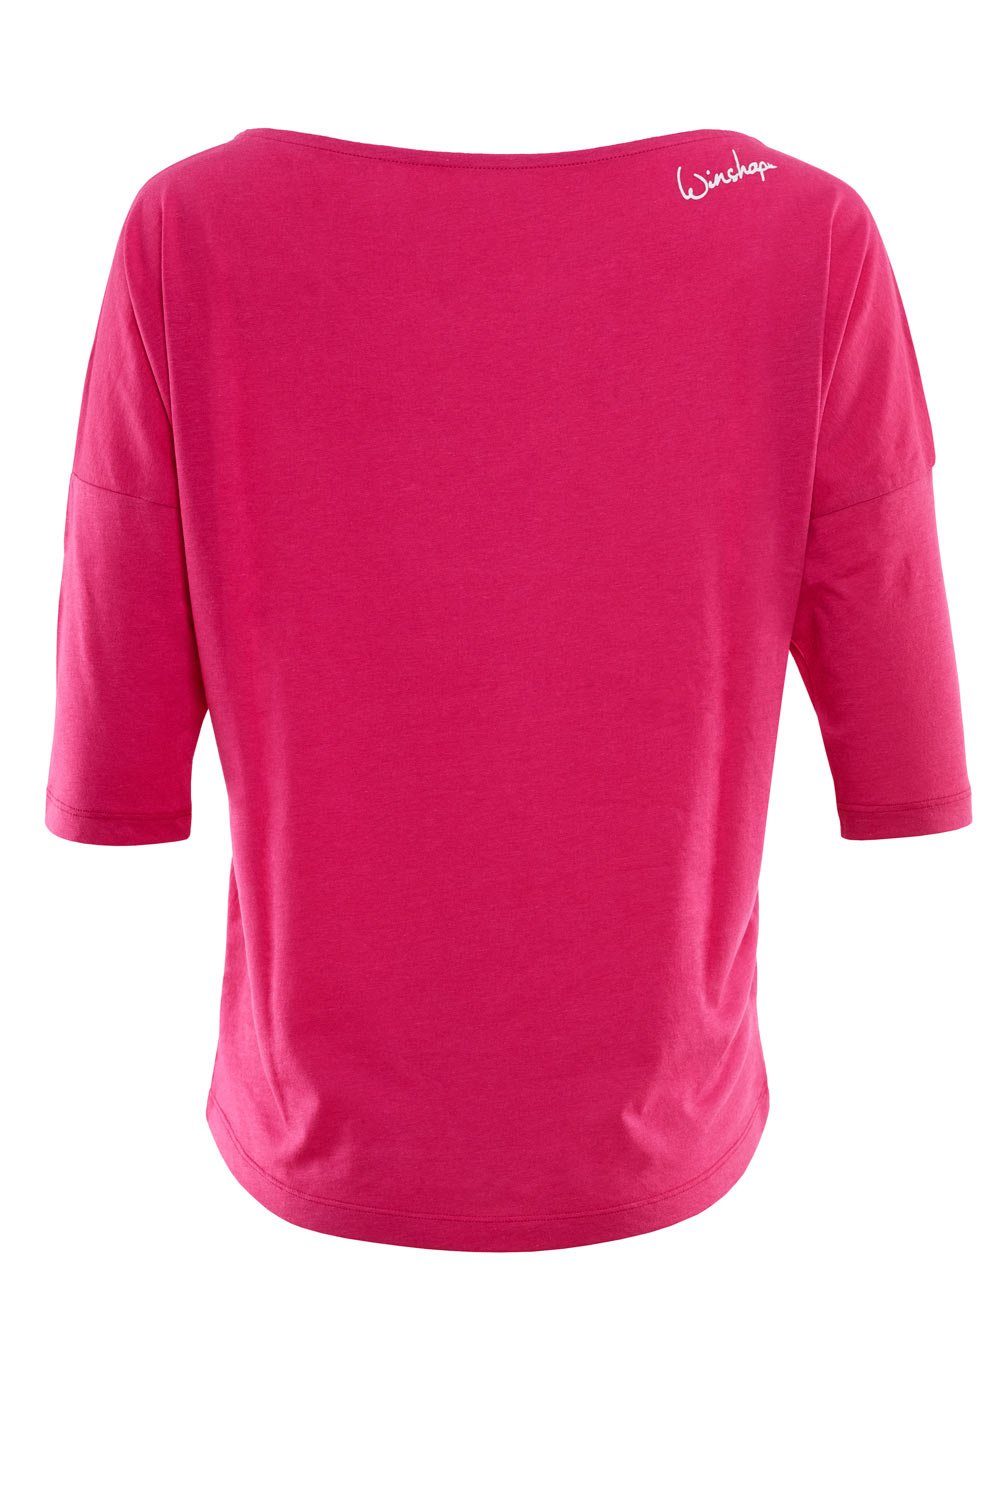 Winshape 3/4-Arm-Shirt MCS001 ultra leicht Glitzer-Aufdruck mit weiß pink - weißem deep glitzer